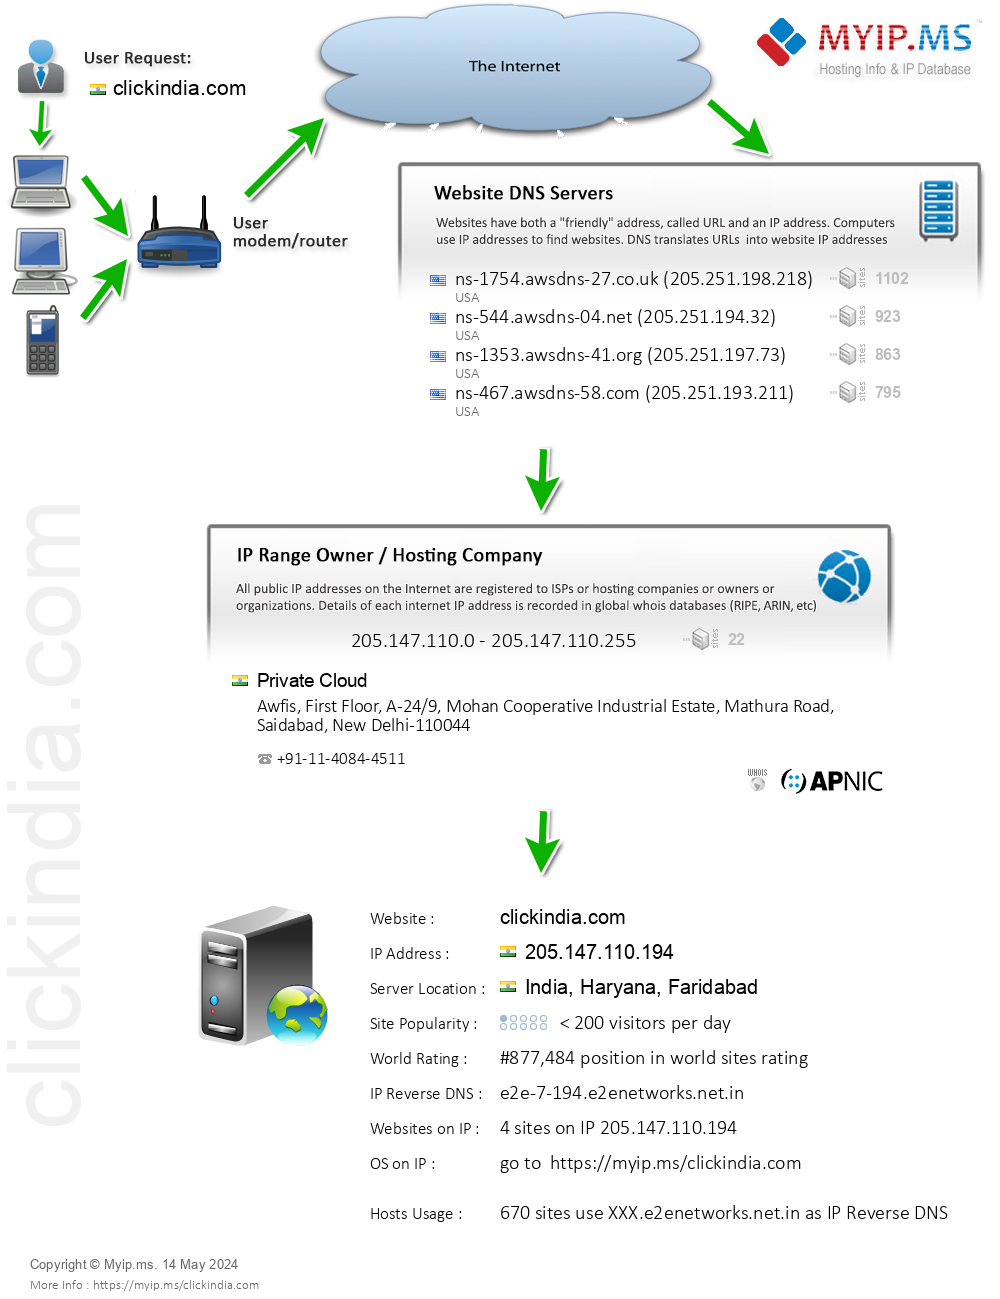 Clickindia.com - Website Hosting Visual IP Diagram